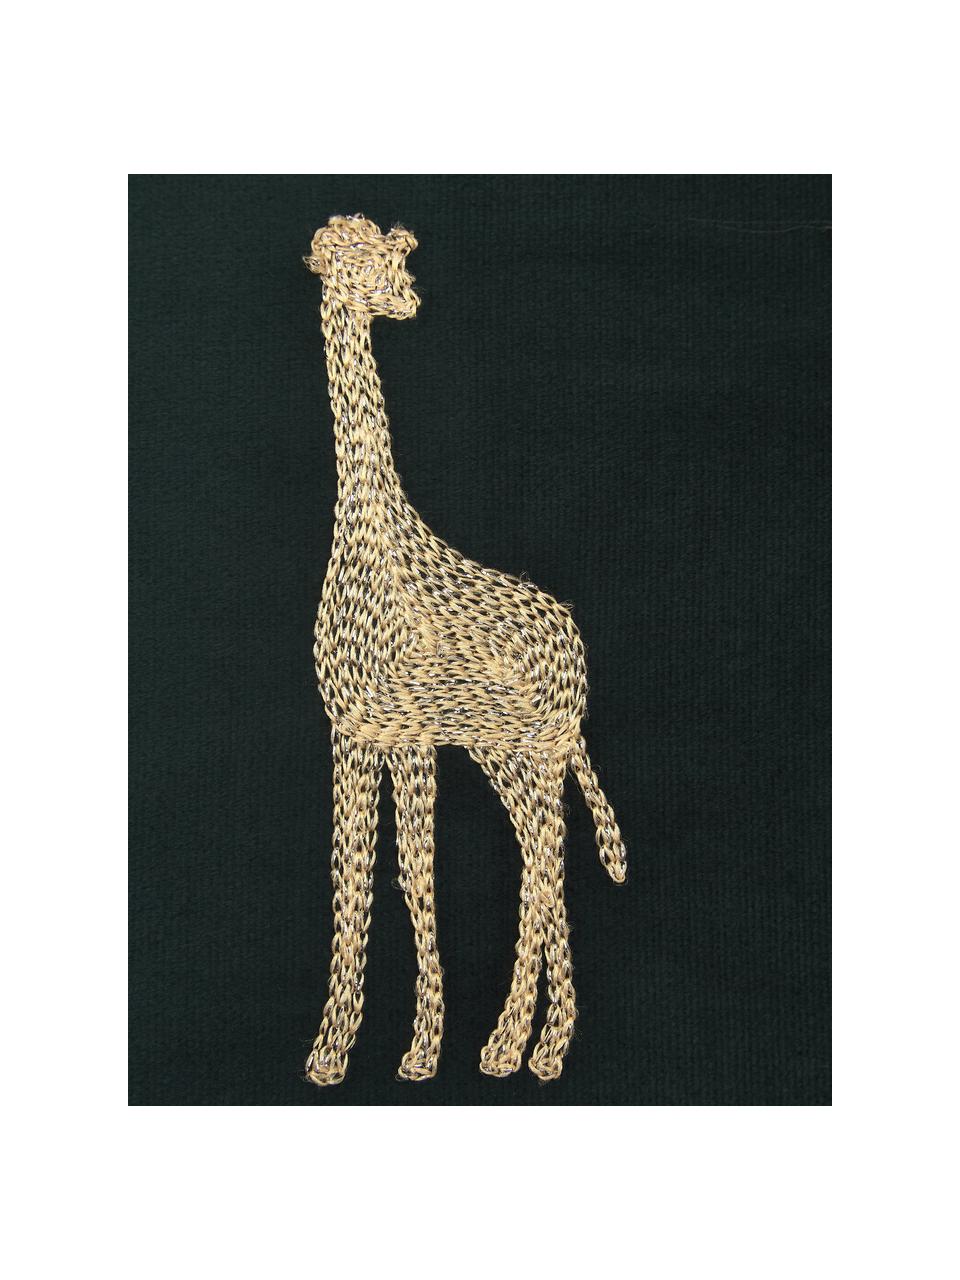 Cojín de terciopelo con bordado Giraffe, con relleno, 100% terciopelo (poliéster), Verde, dorado, An 45 x L 45 cm